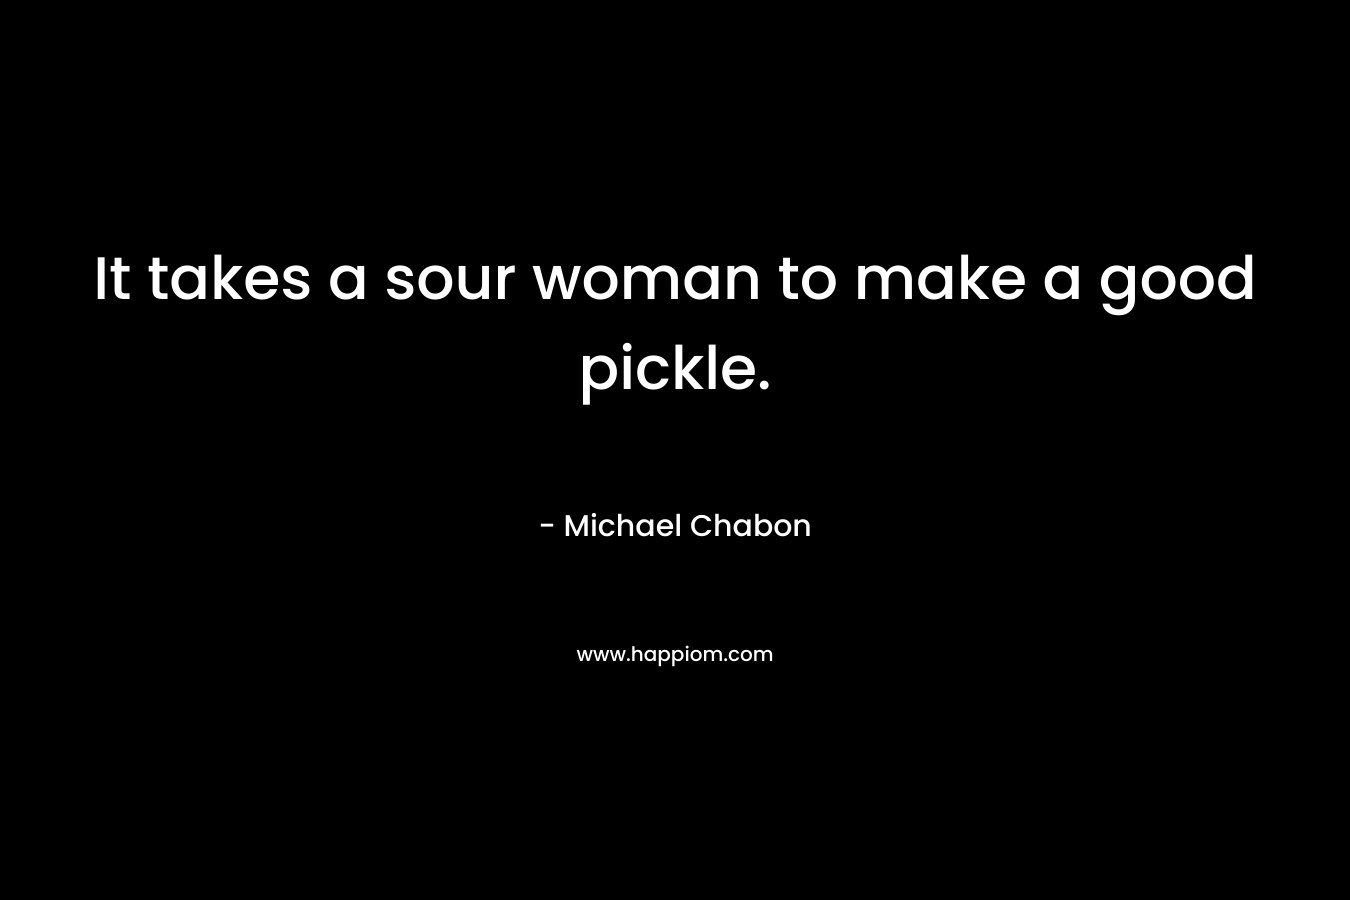 It takes a sour woman to make a good pickle.